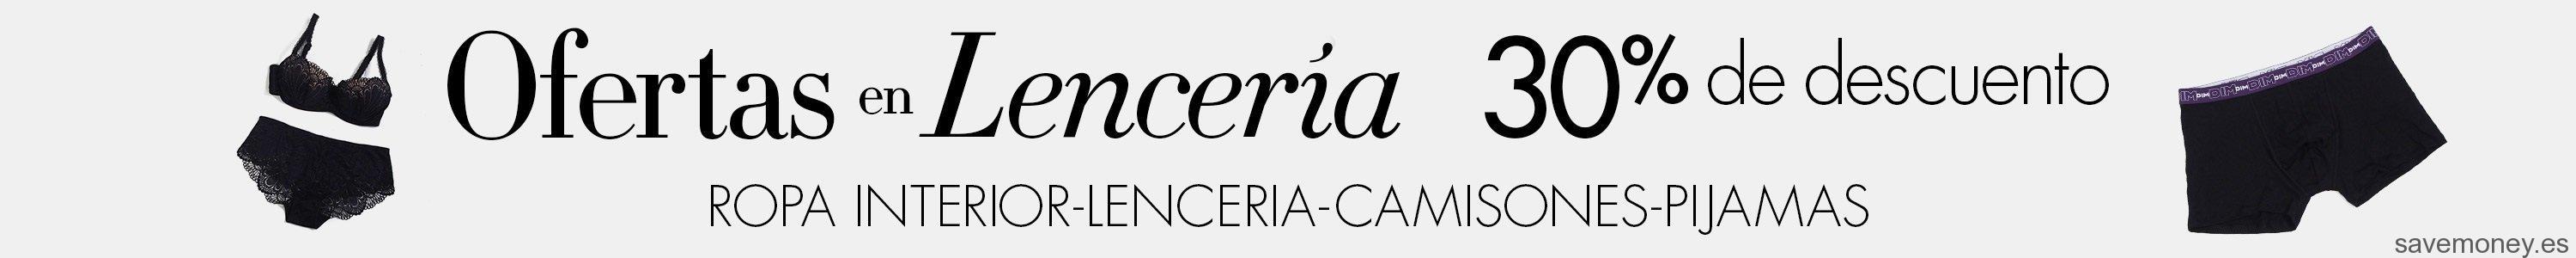 Oferta-Lenceria-Amazon-España